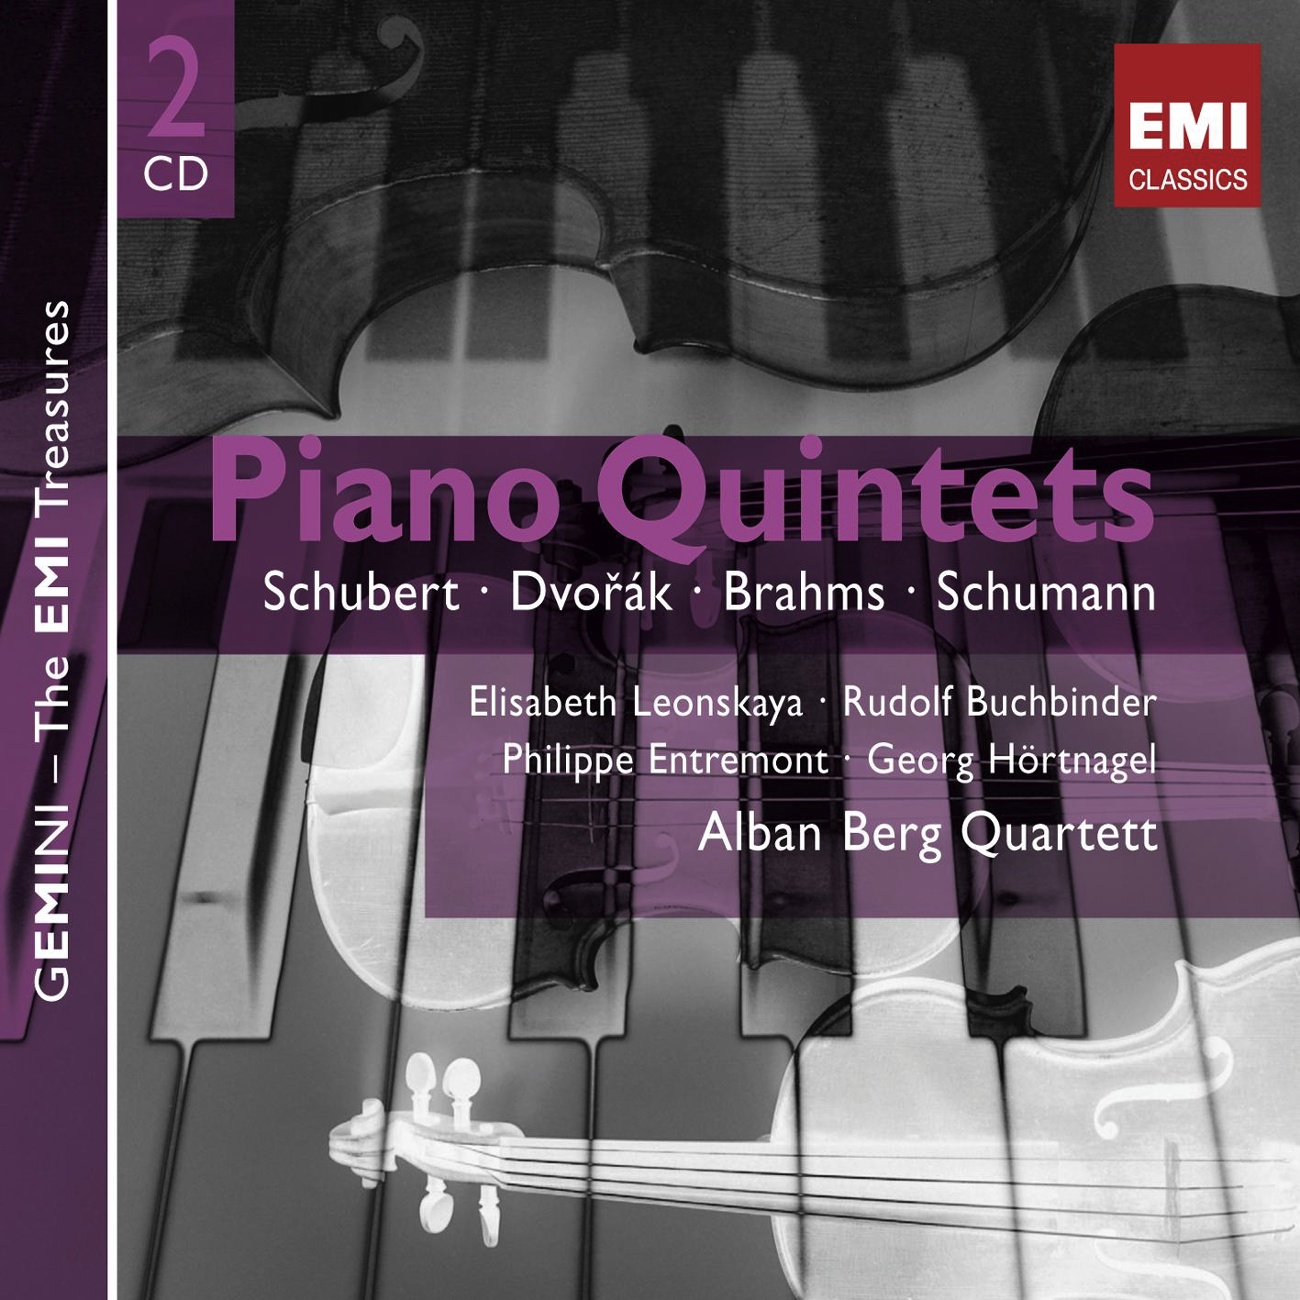 Piano Quintet in E Flat Major, Op.44: IV. Finale (Allegro ma non troppo)